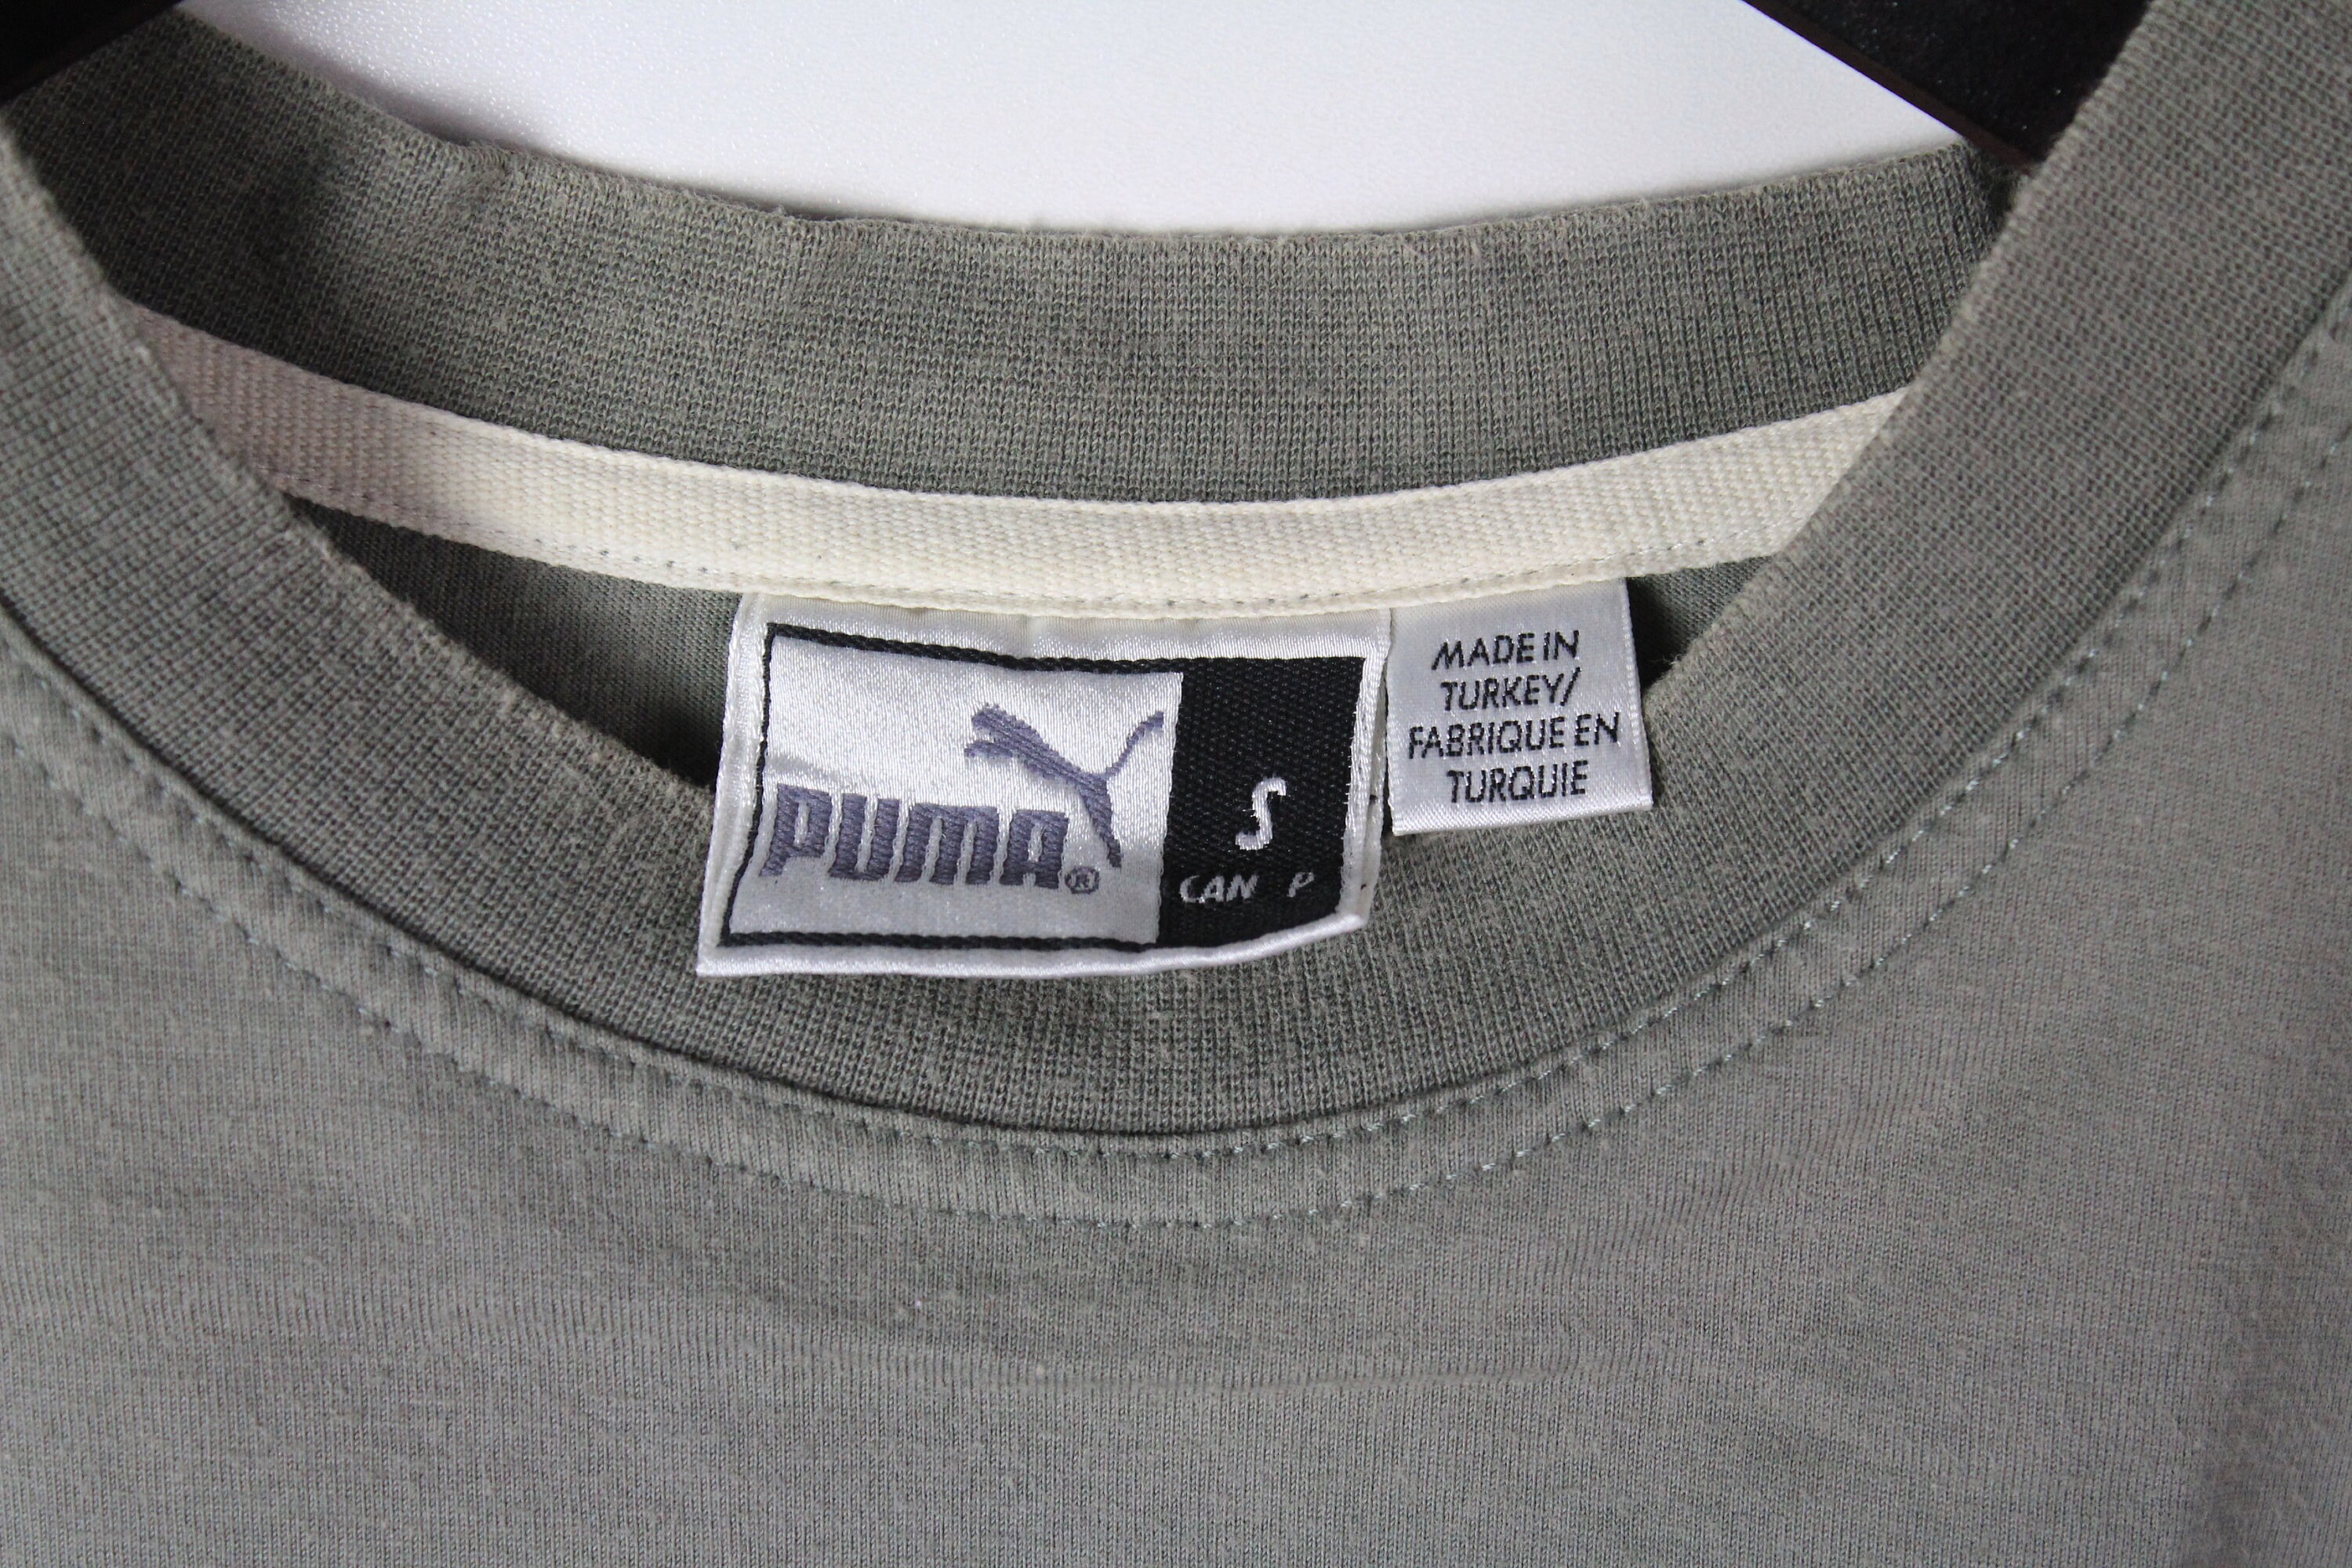 Vintage PUMA Authentic T-shirt Big Logo Athletic Tee Retro - Etsy UK